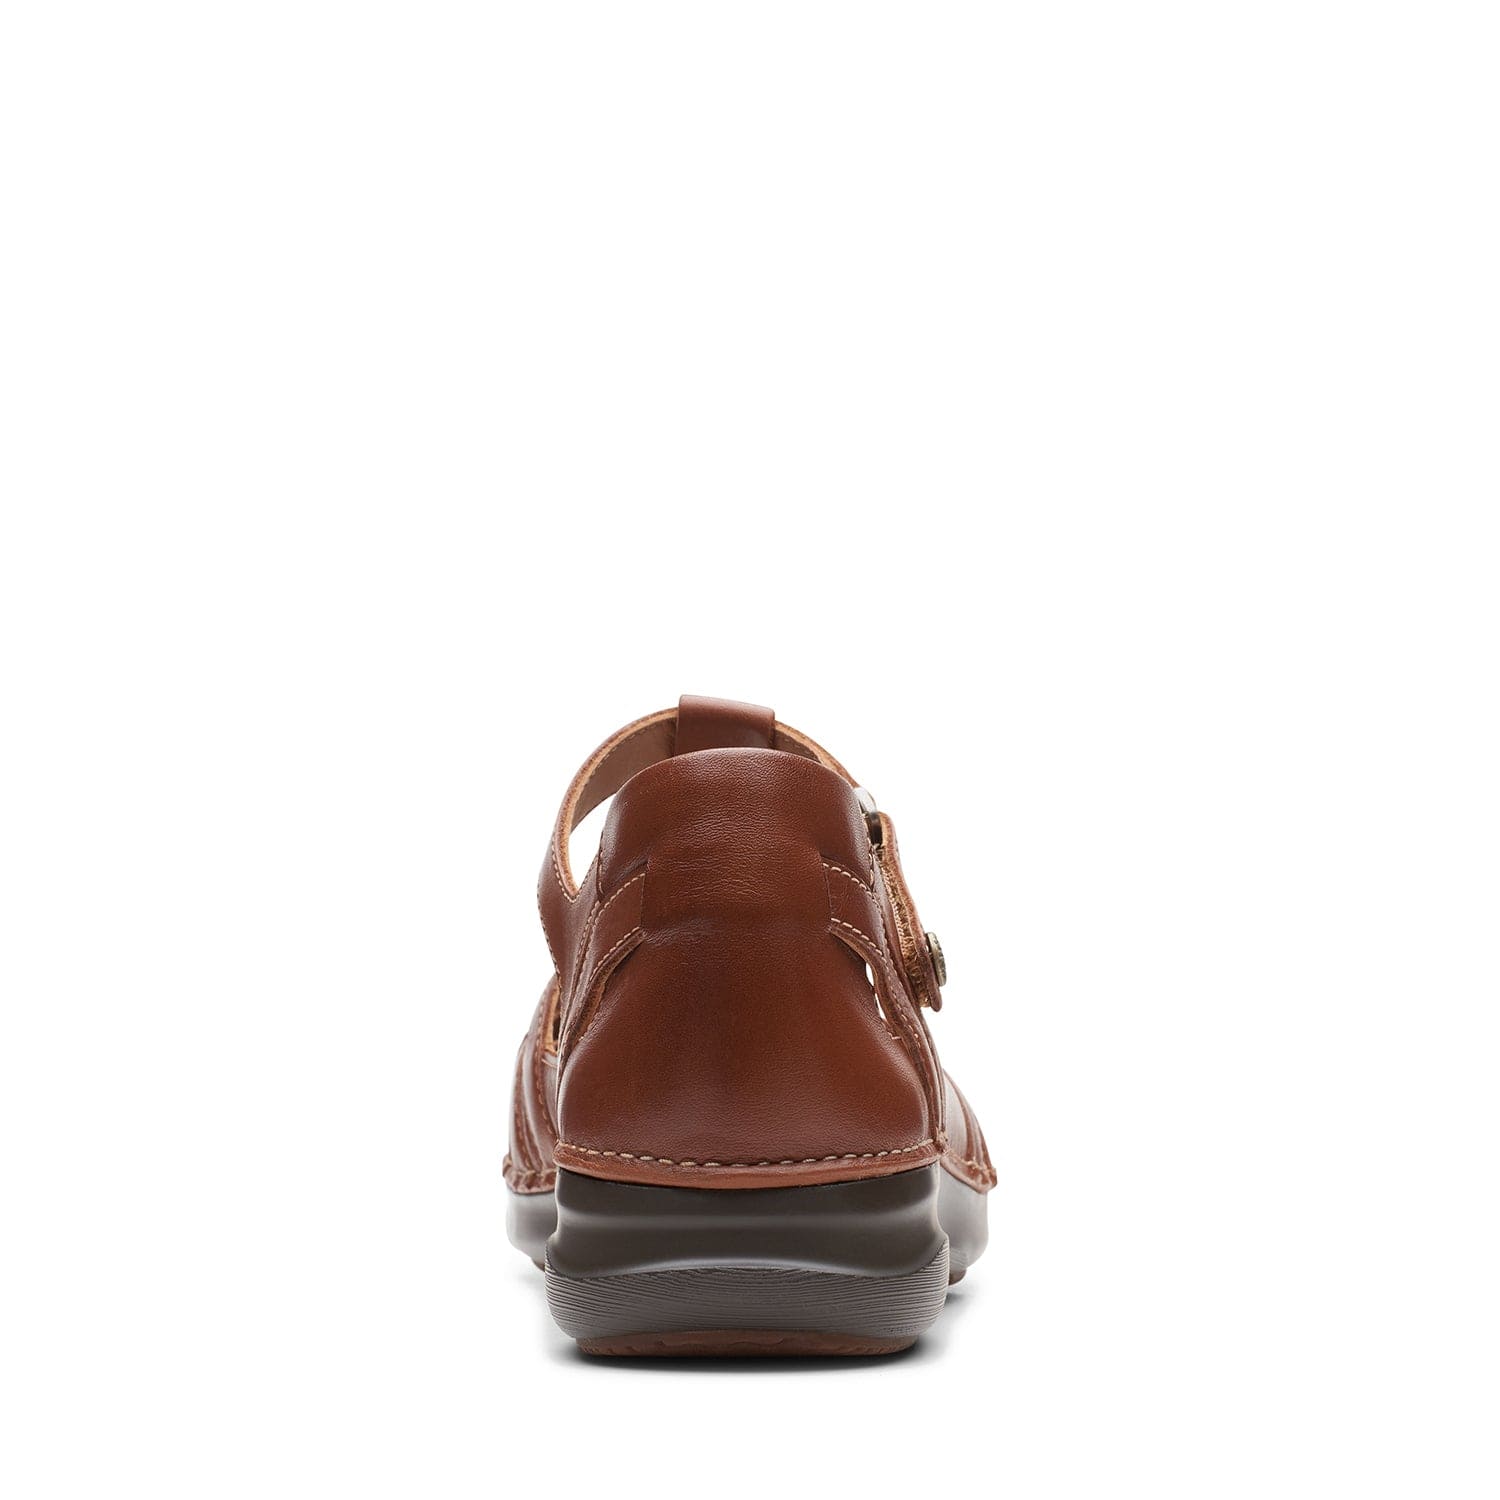 Clarks Appley Way - Shoes - Dark Tan Lea - 261655295 - E Width (Wide Fit)